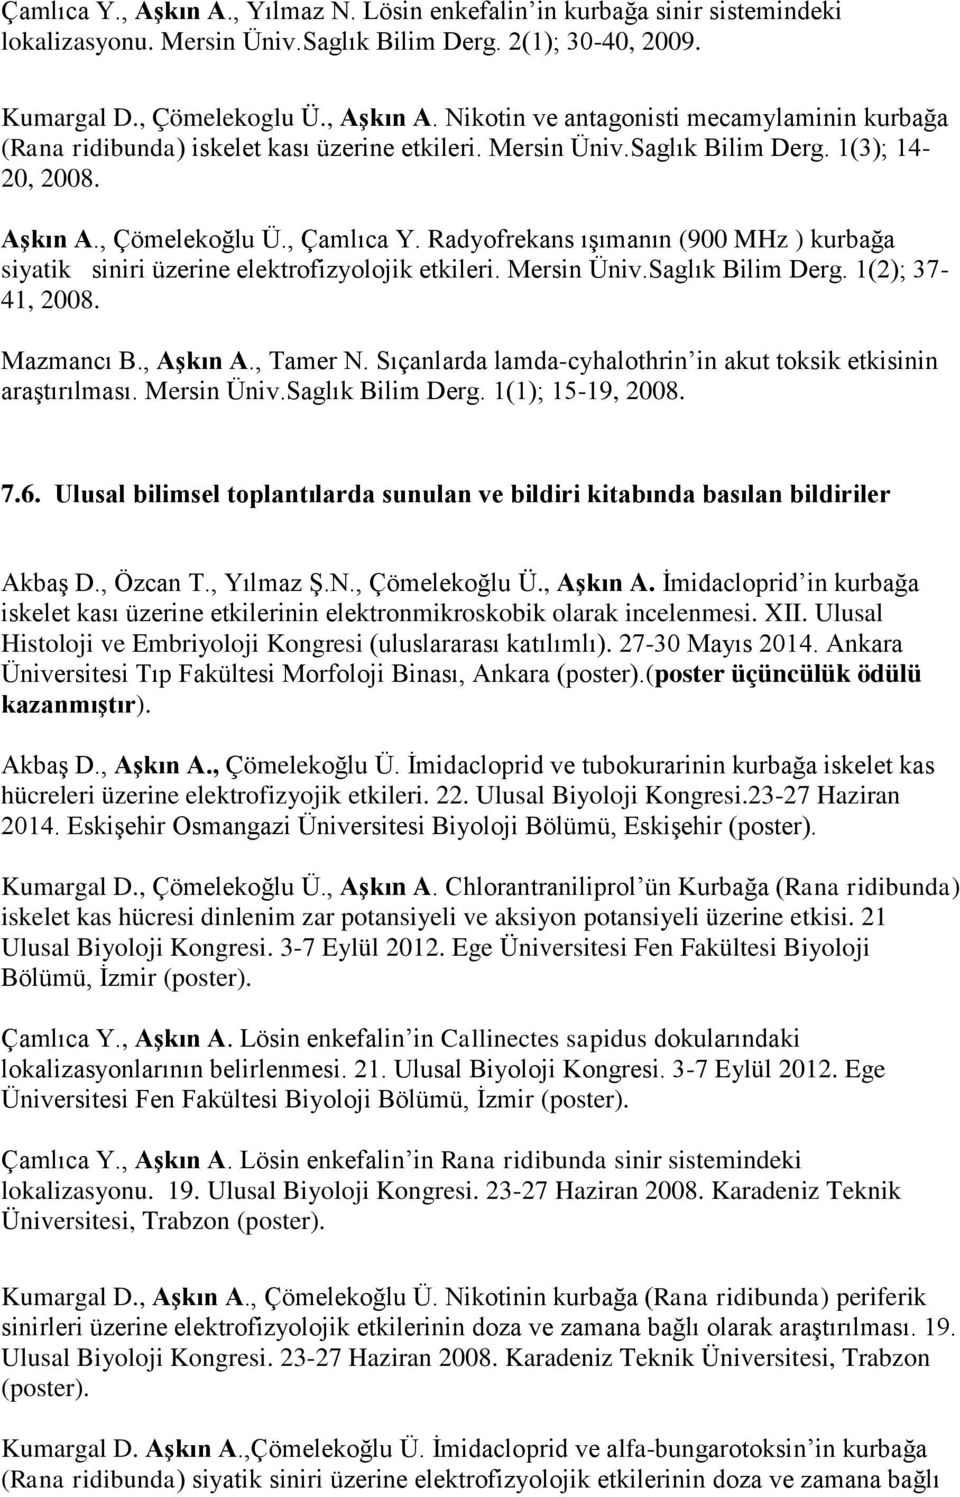 Saglık Bilim Derg. 1(2); 37-41, 2008. Mazmancı B., Aşkın A., Tamer N. Sıçanlarda lamda-cyhalothrin in akut toksik etkisinin araştırılması. Mersin Üniv.Saglık Bilim Derg. 1(1); 15-19, 2008. 7.6.